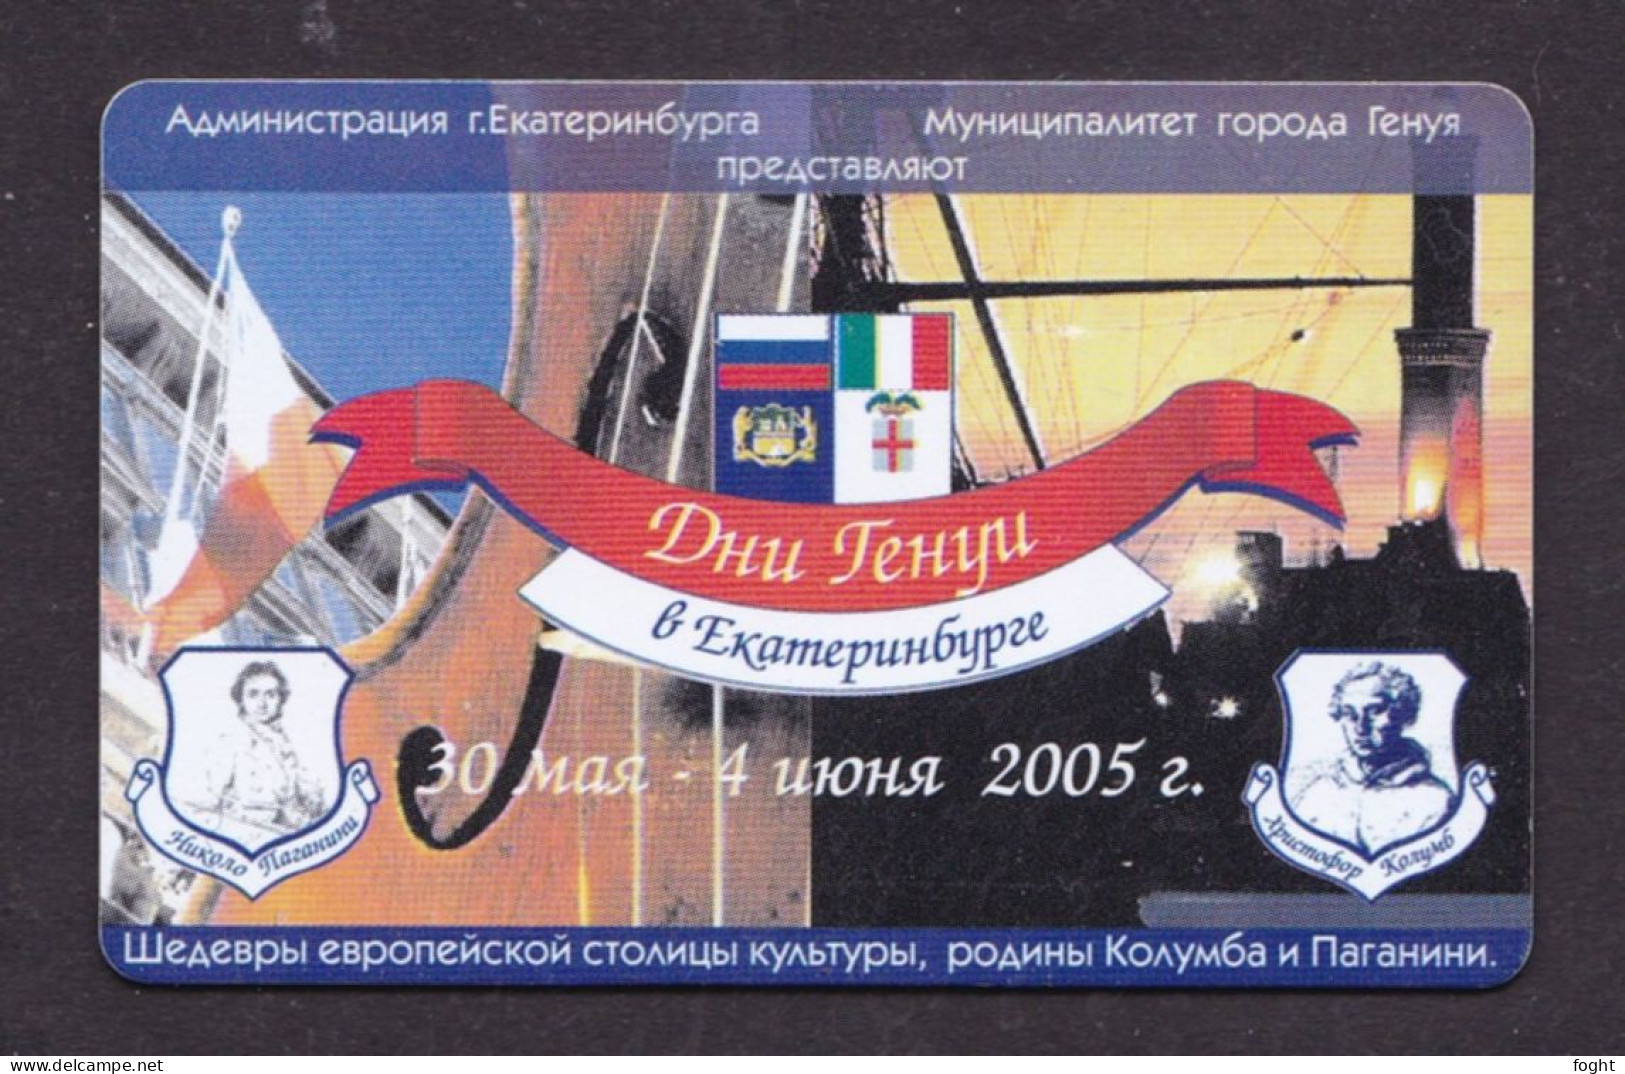 2004 Russia, Phonecard › Genuar Music Days In Ekaterinburg 30.5.-4.6.2005, 30 Units,Col:RU-EKB-CC-RU-0005 - Russia